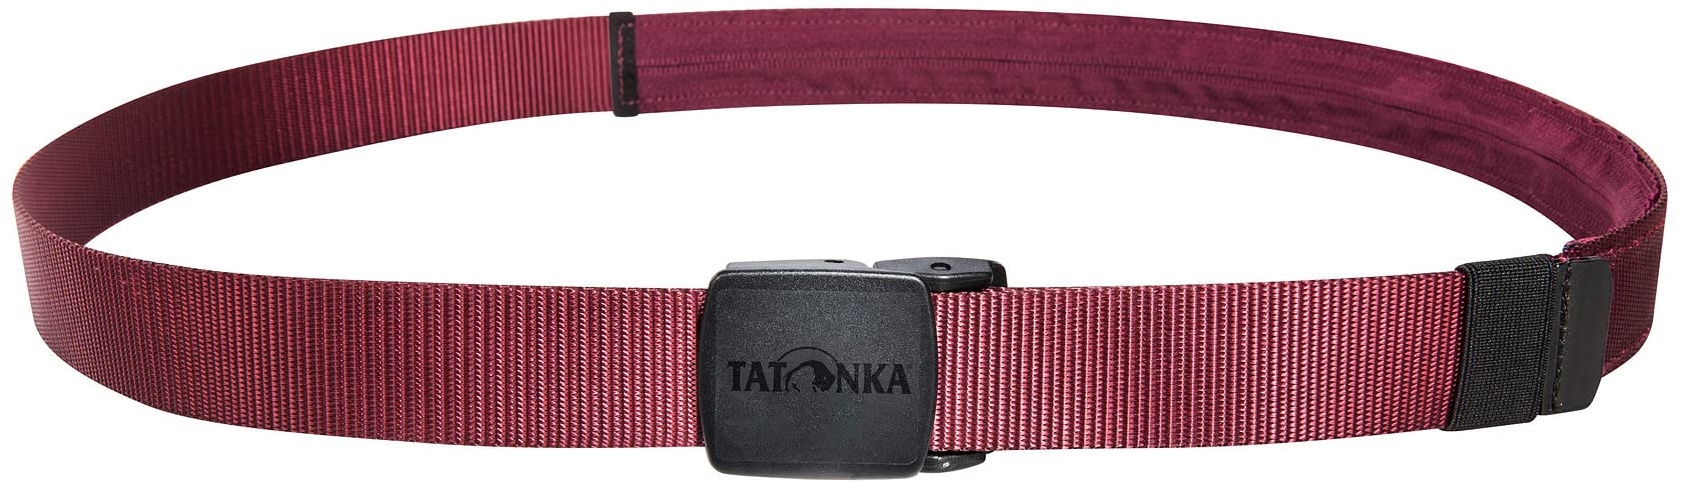 Tatonka Reisegürtel Travel Waistbelt 30mm - Gürtel mit Geheimfach an der Innenseite - 130 cm lang / 3 cm breit (bordeaux red)